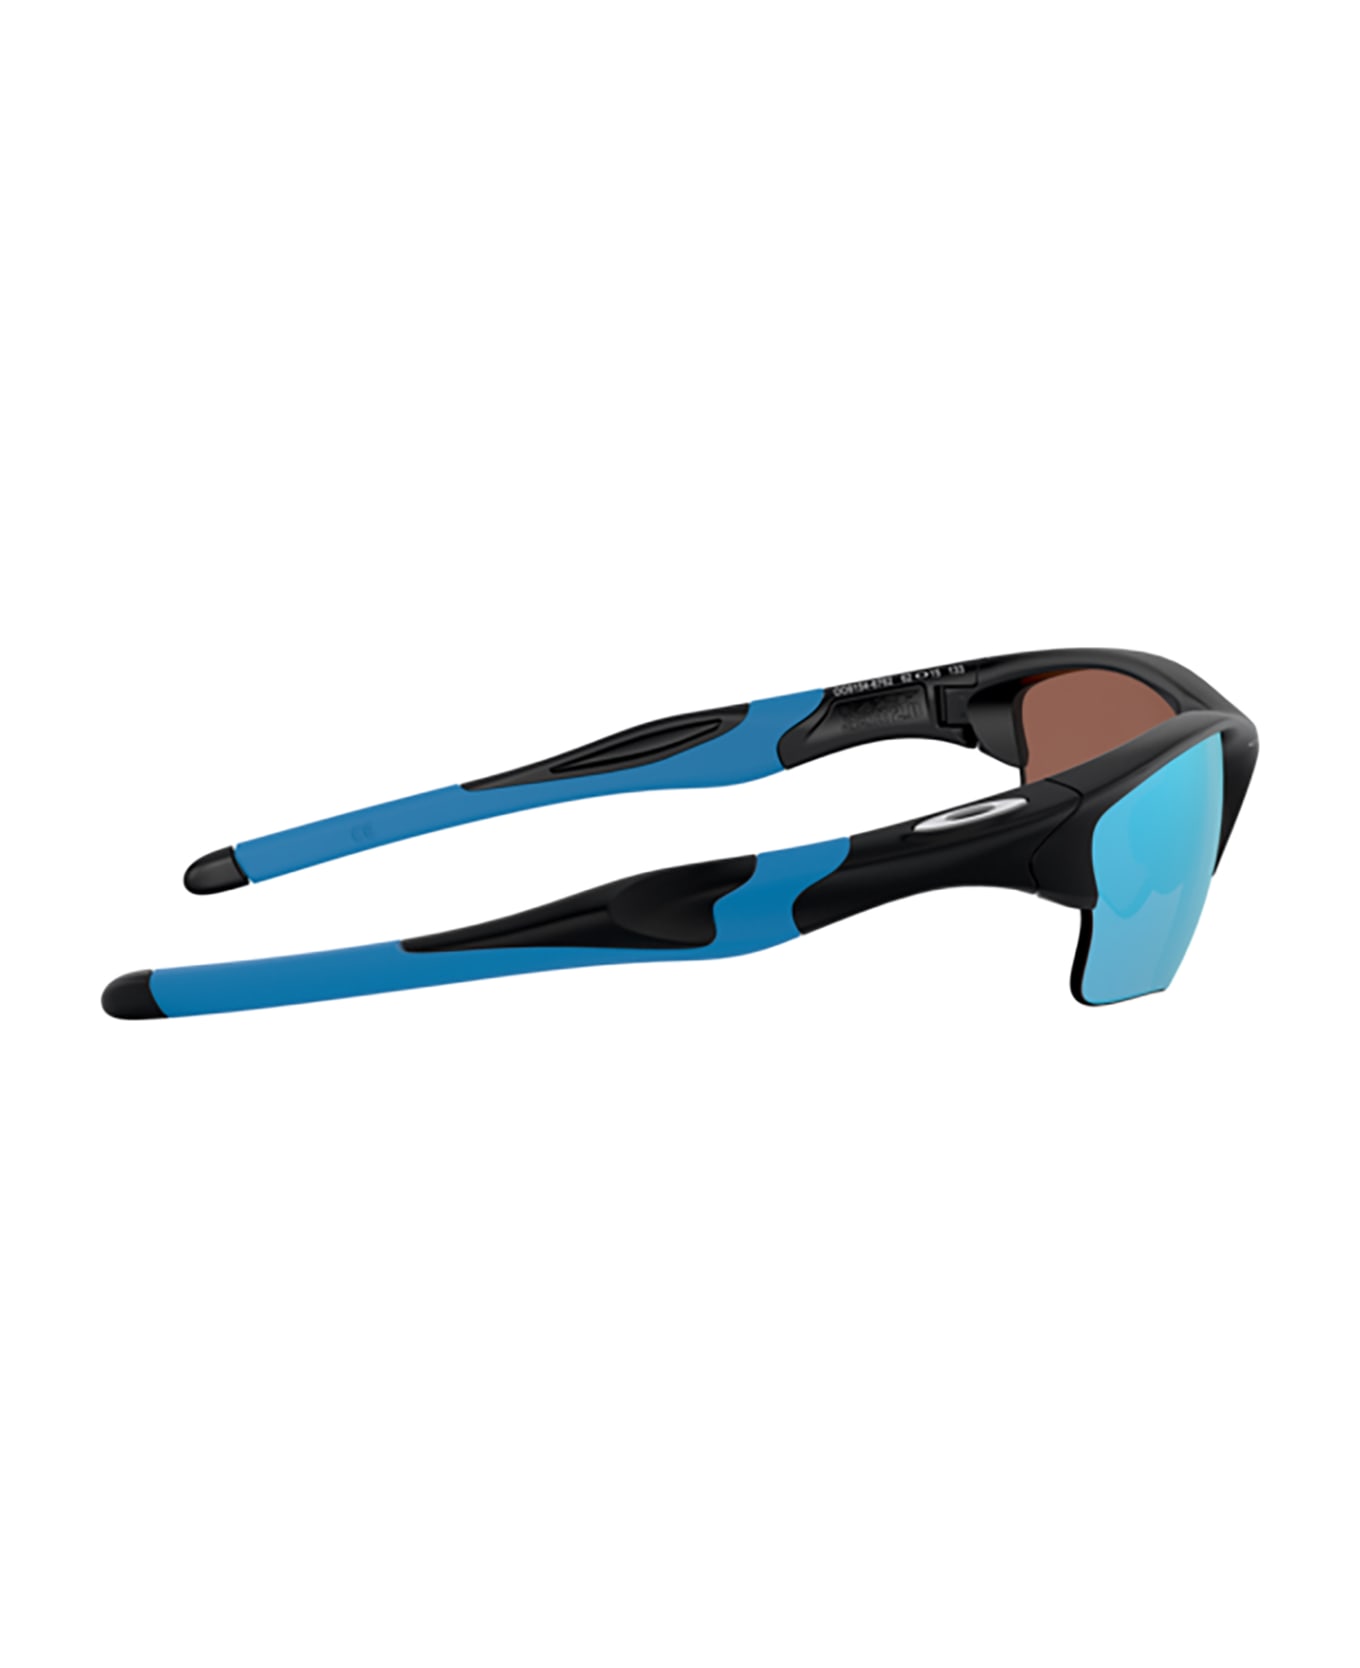 Oakley Oo9154 Matte Black Sunglasses - MATTE BLACK サングラス